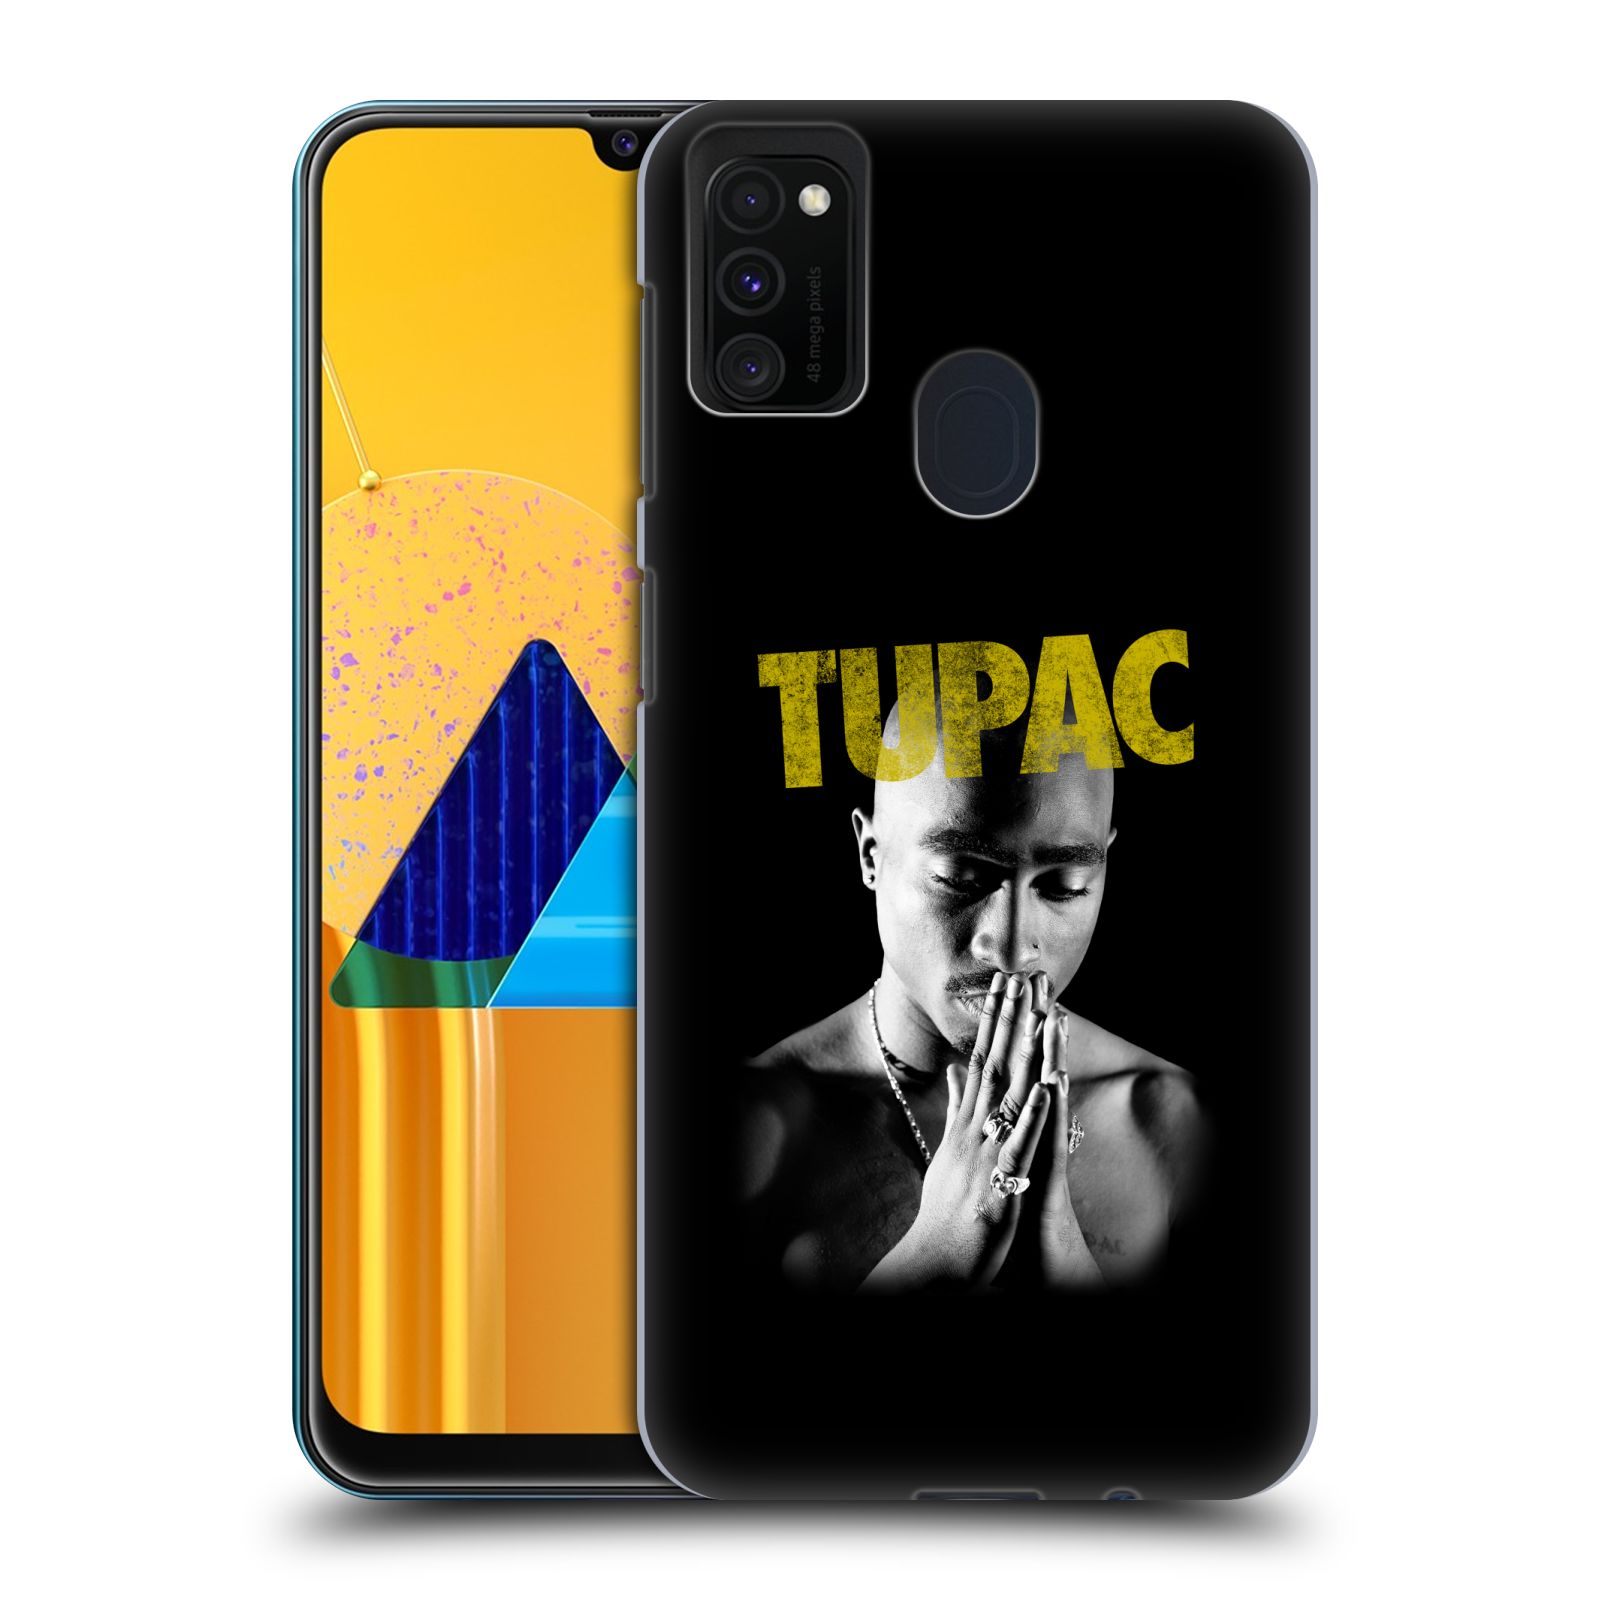 Zadní kryt na mobil Samsung Galaxy M21 Zpěvák rapper Tupac Shakur 2Pac zlatý nadpis